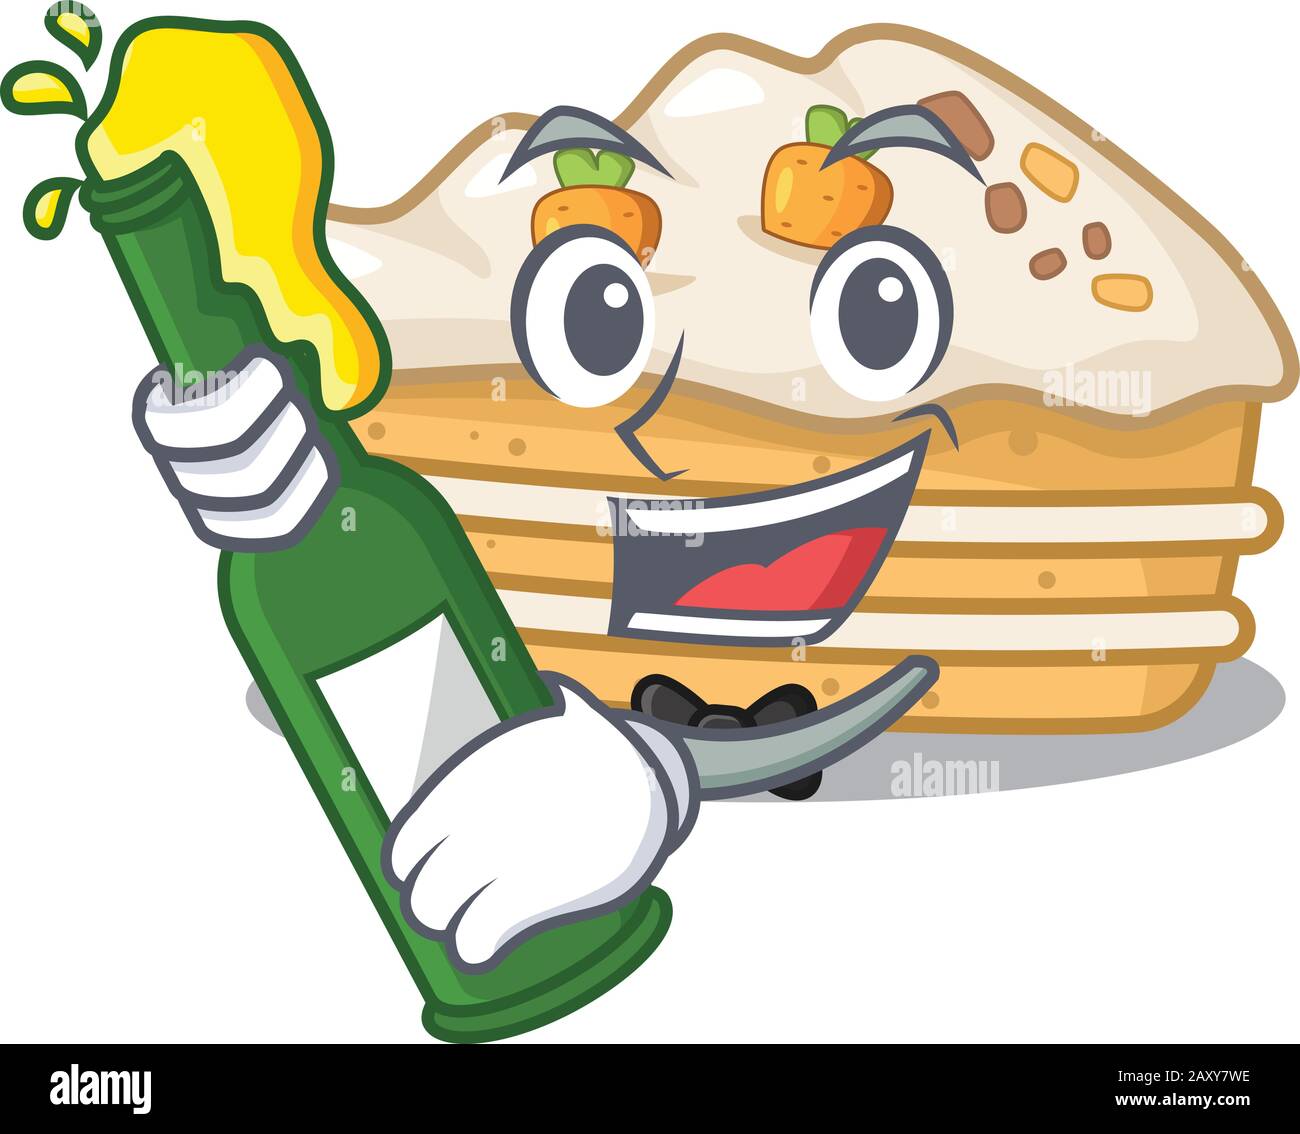 motif mascotte de dessin animé de gâteau de carotte avec bouteille de bière Illustration de Vecteur